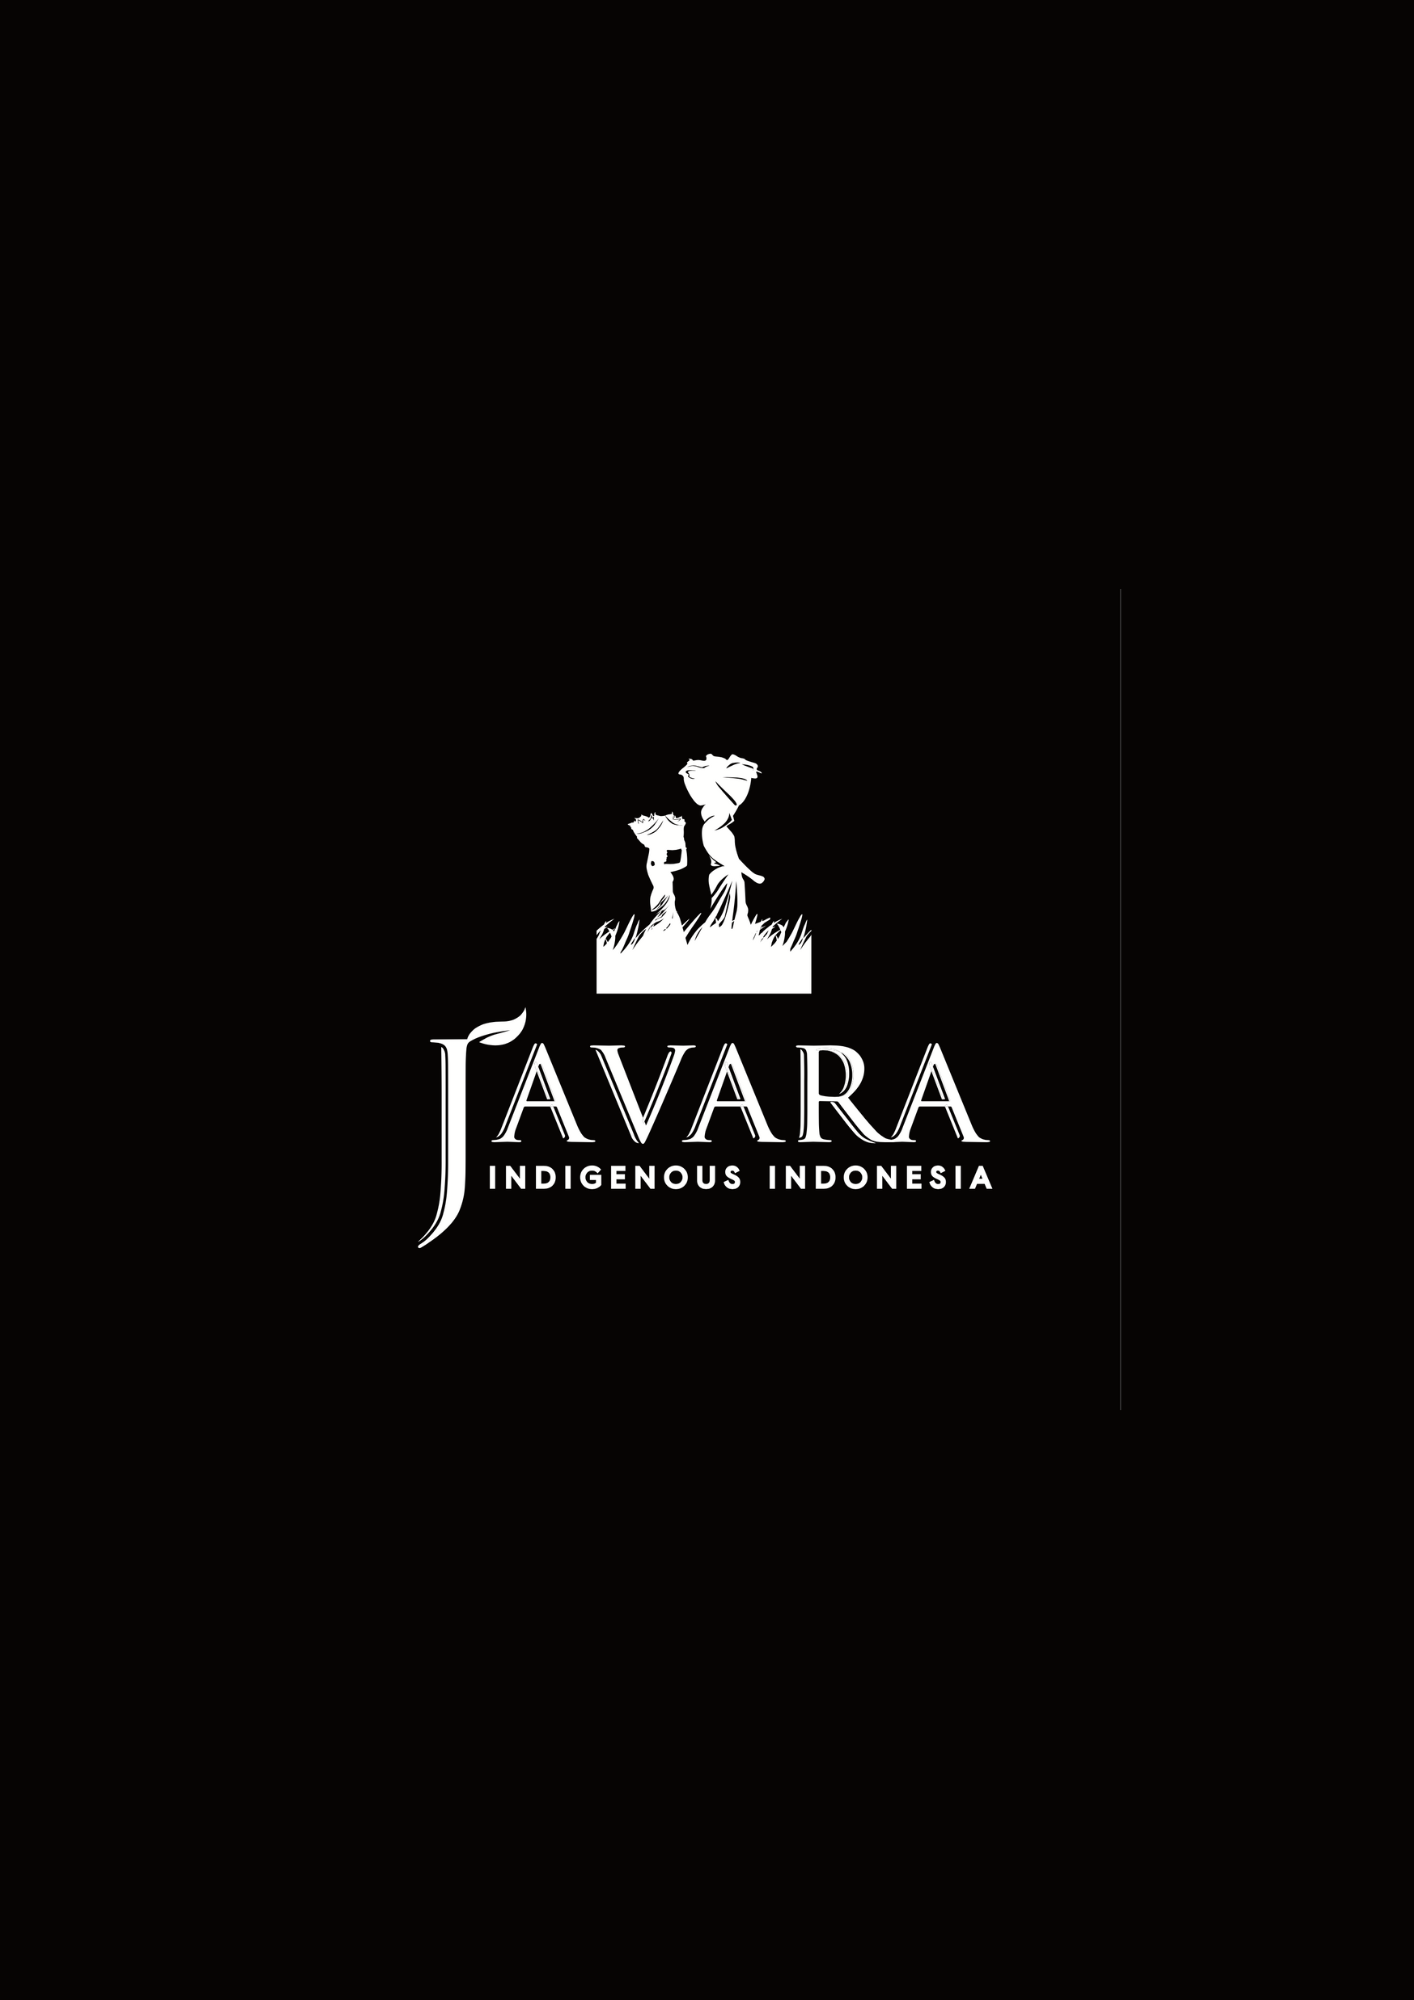 شعار جافارا، وهي شركة إندونيسية أصلية، مع اسم العلامة التجارية بخط أبيض على خلفية سوداء.